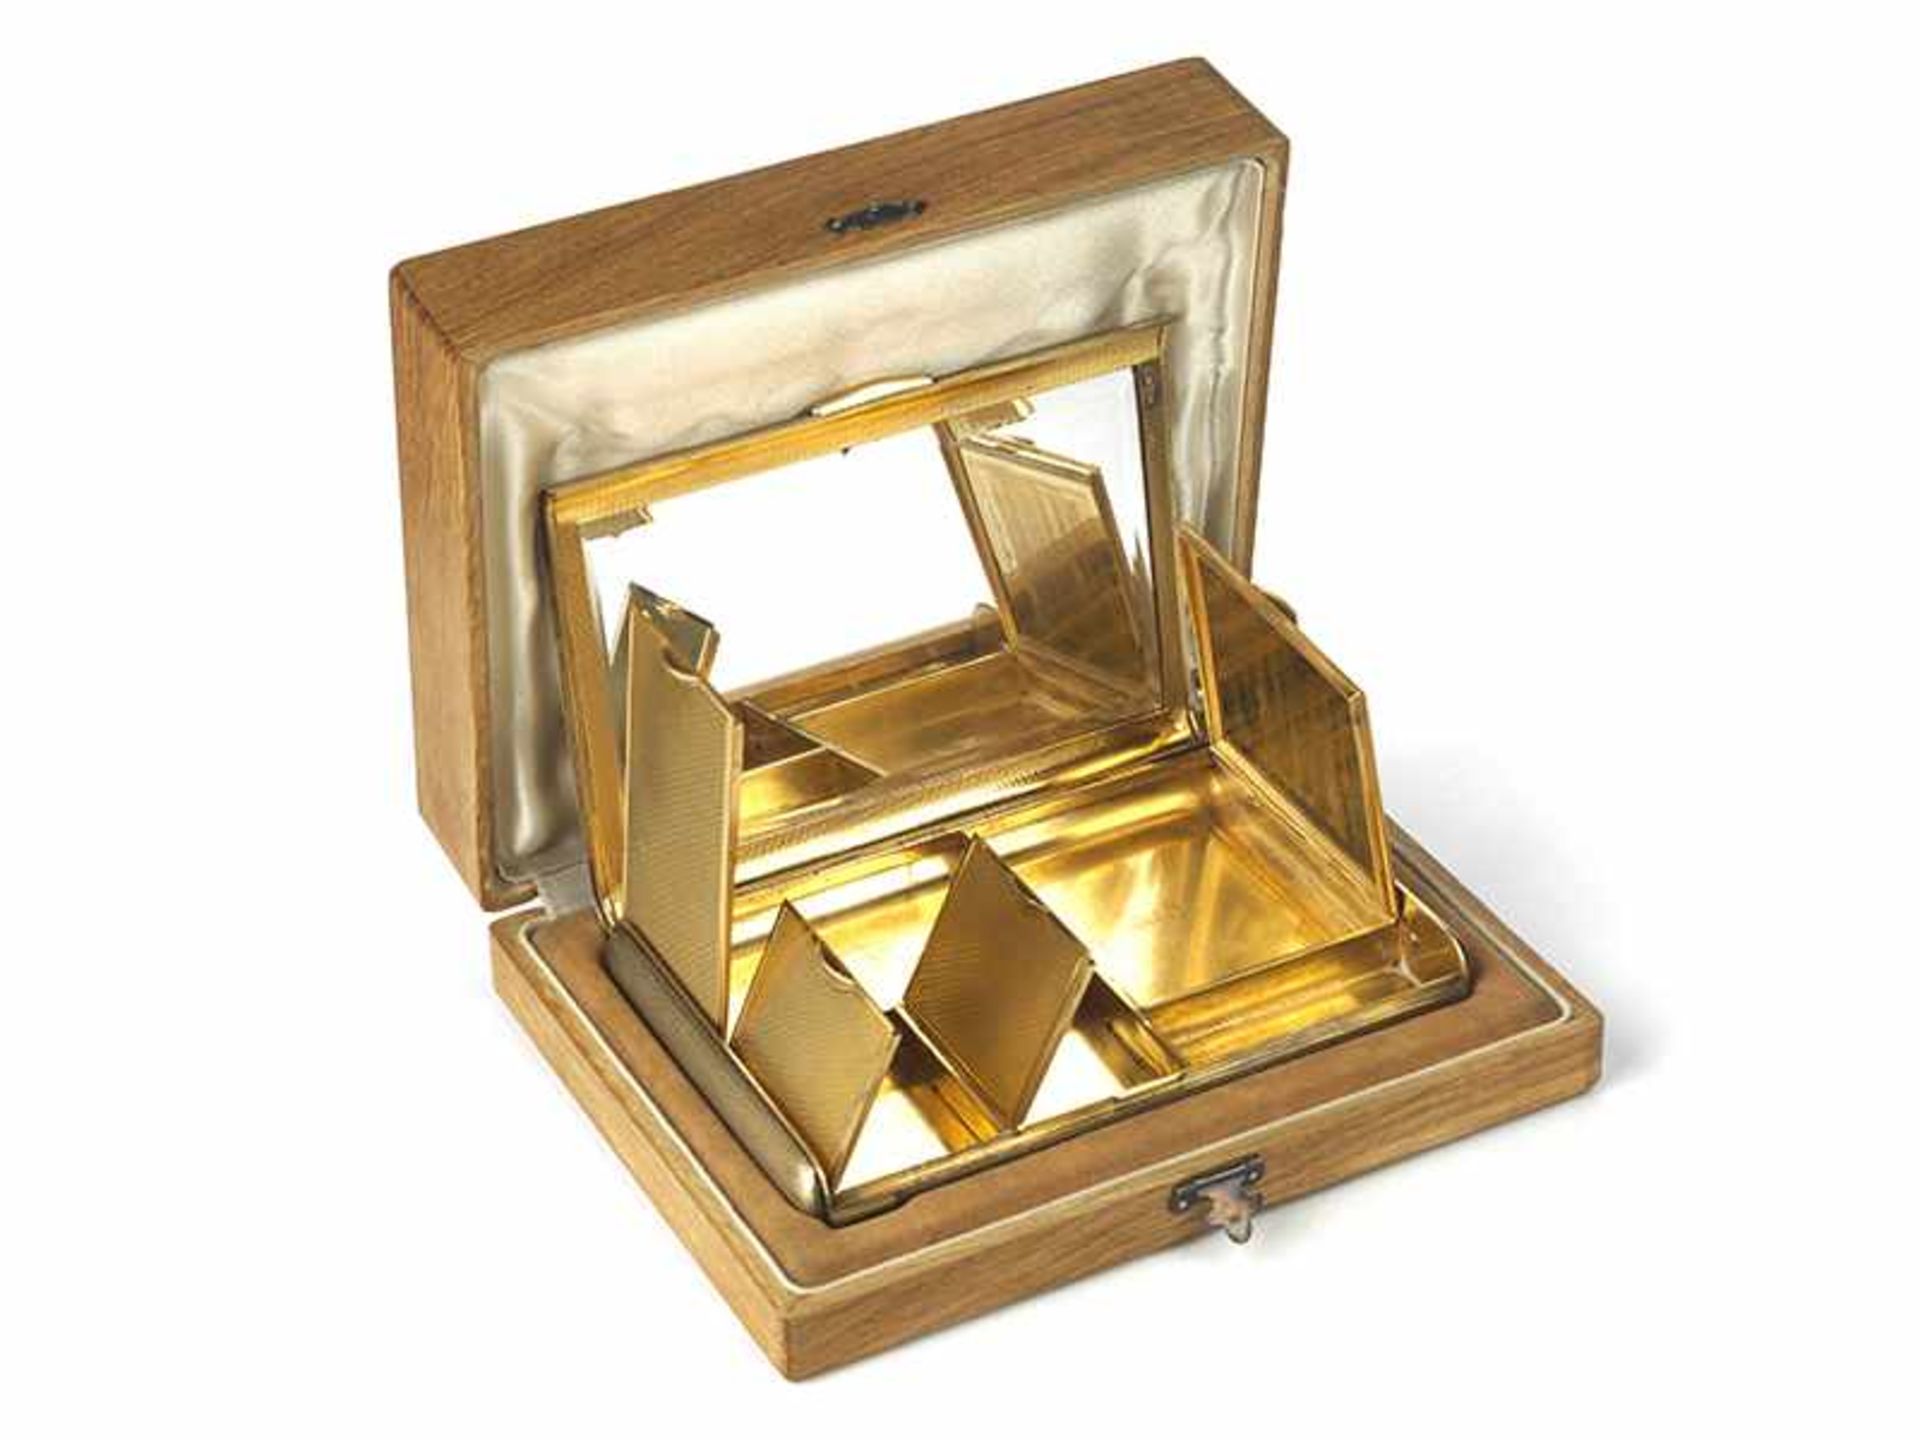 Vergoldetes, reich kassetiertes Etui 2 x 15 x 10,1 cm. Gewicht: 482 g. Steckleiste vierfach mit - Bild 8 aus 17